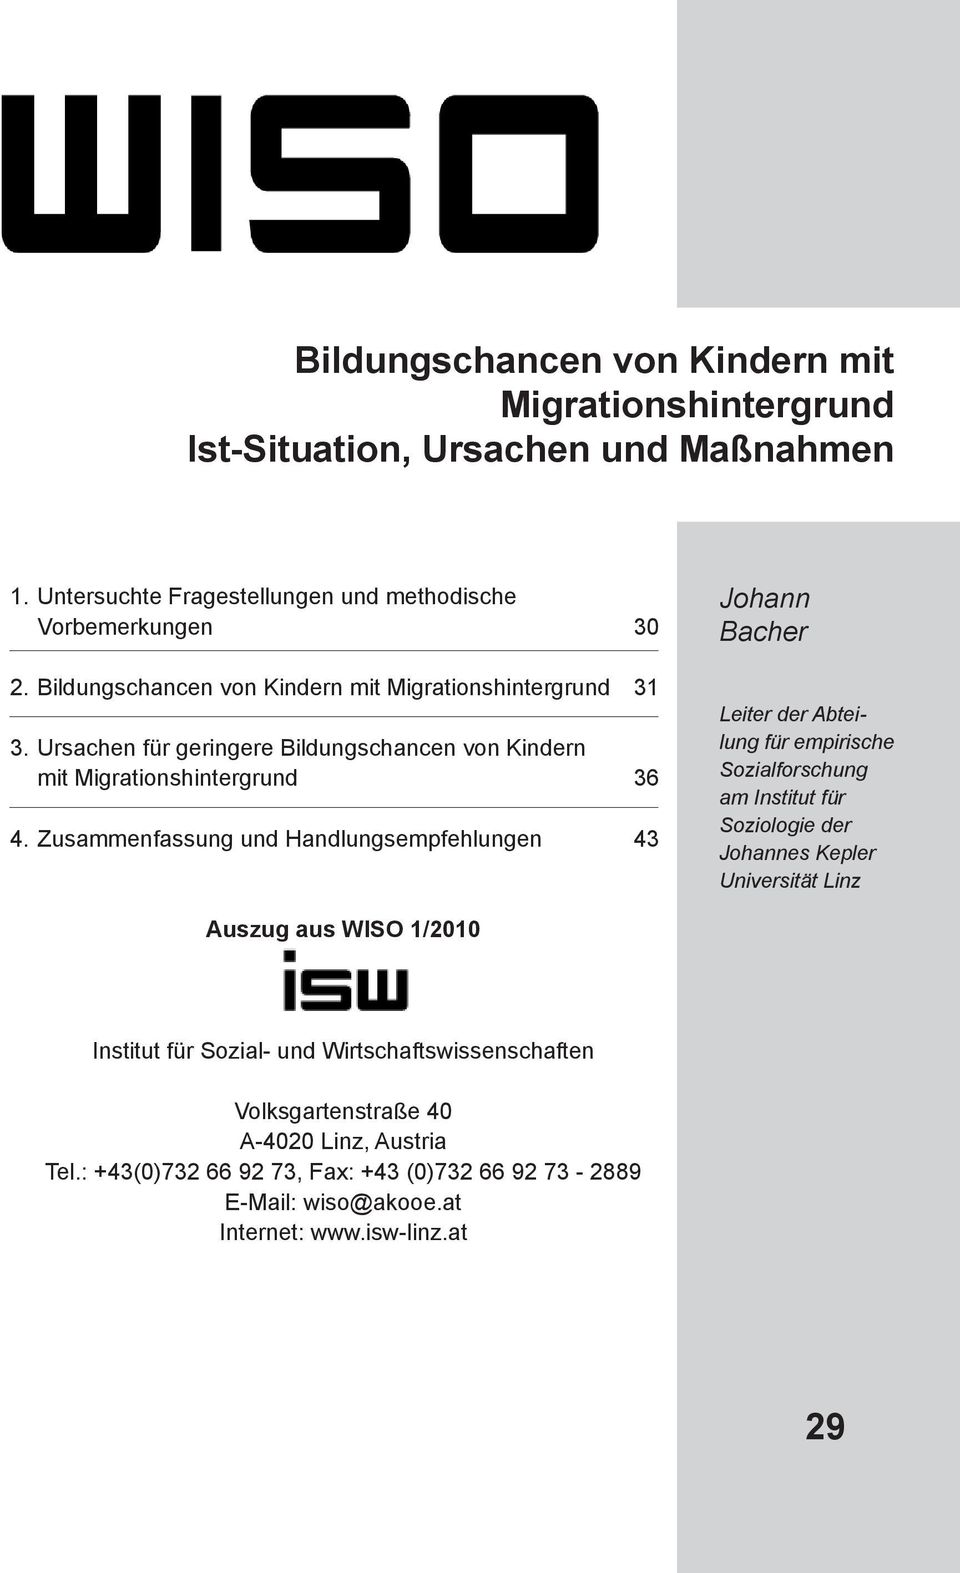 Zusammenfassung und Handlungsempfehlungen 43 Johann Bacher Leiter der Abteilung für empirische Sozialforschung am Institut für Soziologie der Johannes Kepler Universität Linz